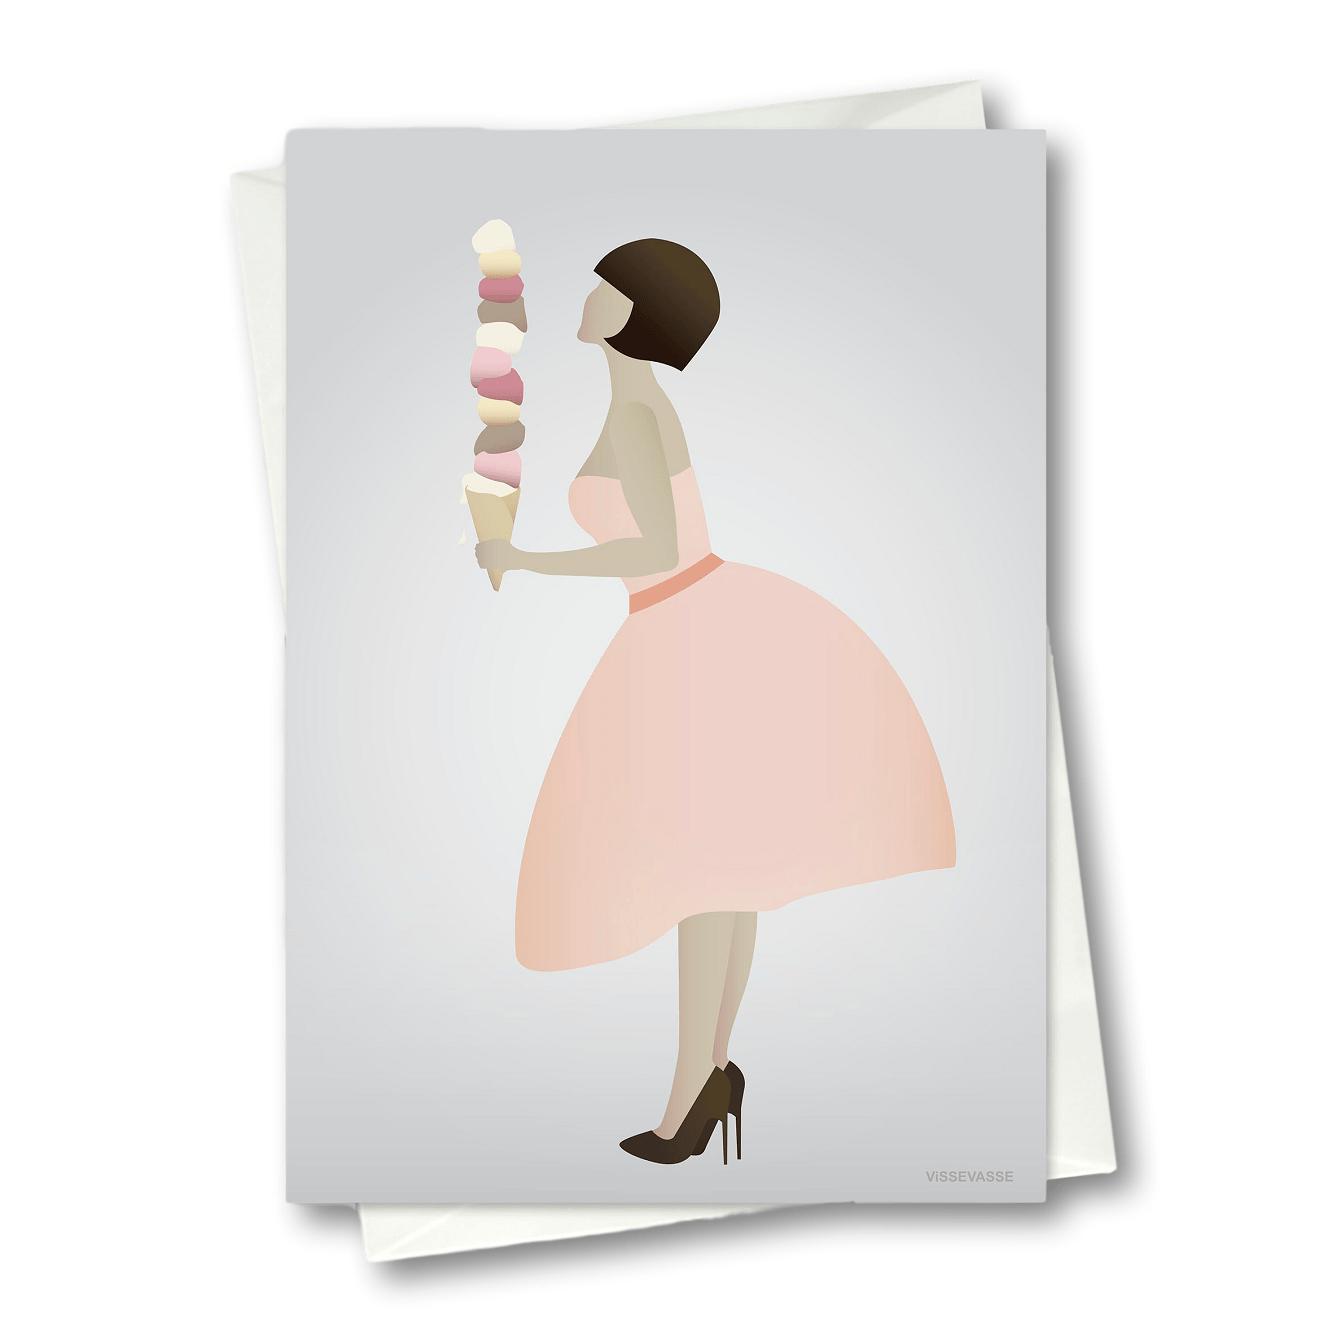 Pozřební karta Vissevasse Ice Cream Lady, 10,5x15 cm